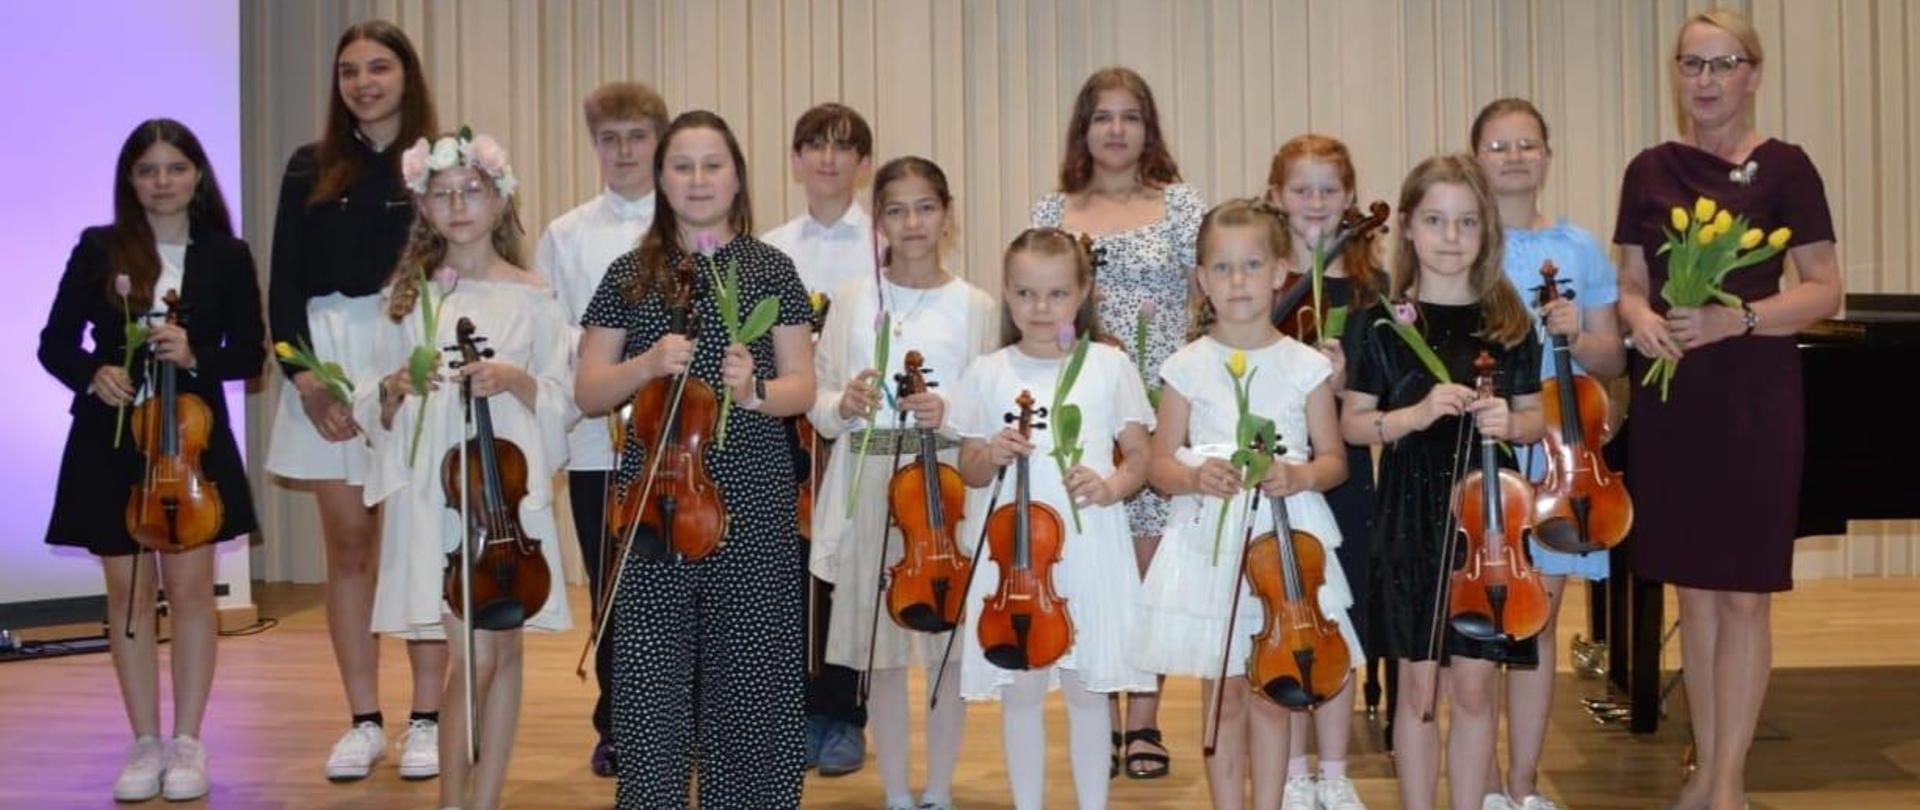 Zdjęcie zostało zrobione podczas koncertu klasy skrzypiec. Na zdjęciu młodzi artyści, którzy zaprezentowali swoje umiejętności gry na skrzypcach. Wszyscy trzymają skrzypce i tulipany, Obok nich kobieta blondynka w okularach w brązowej sukience. 